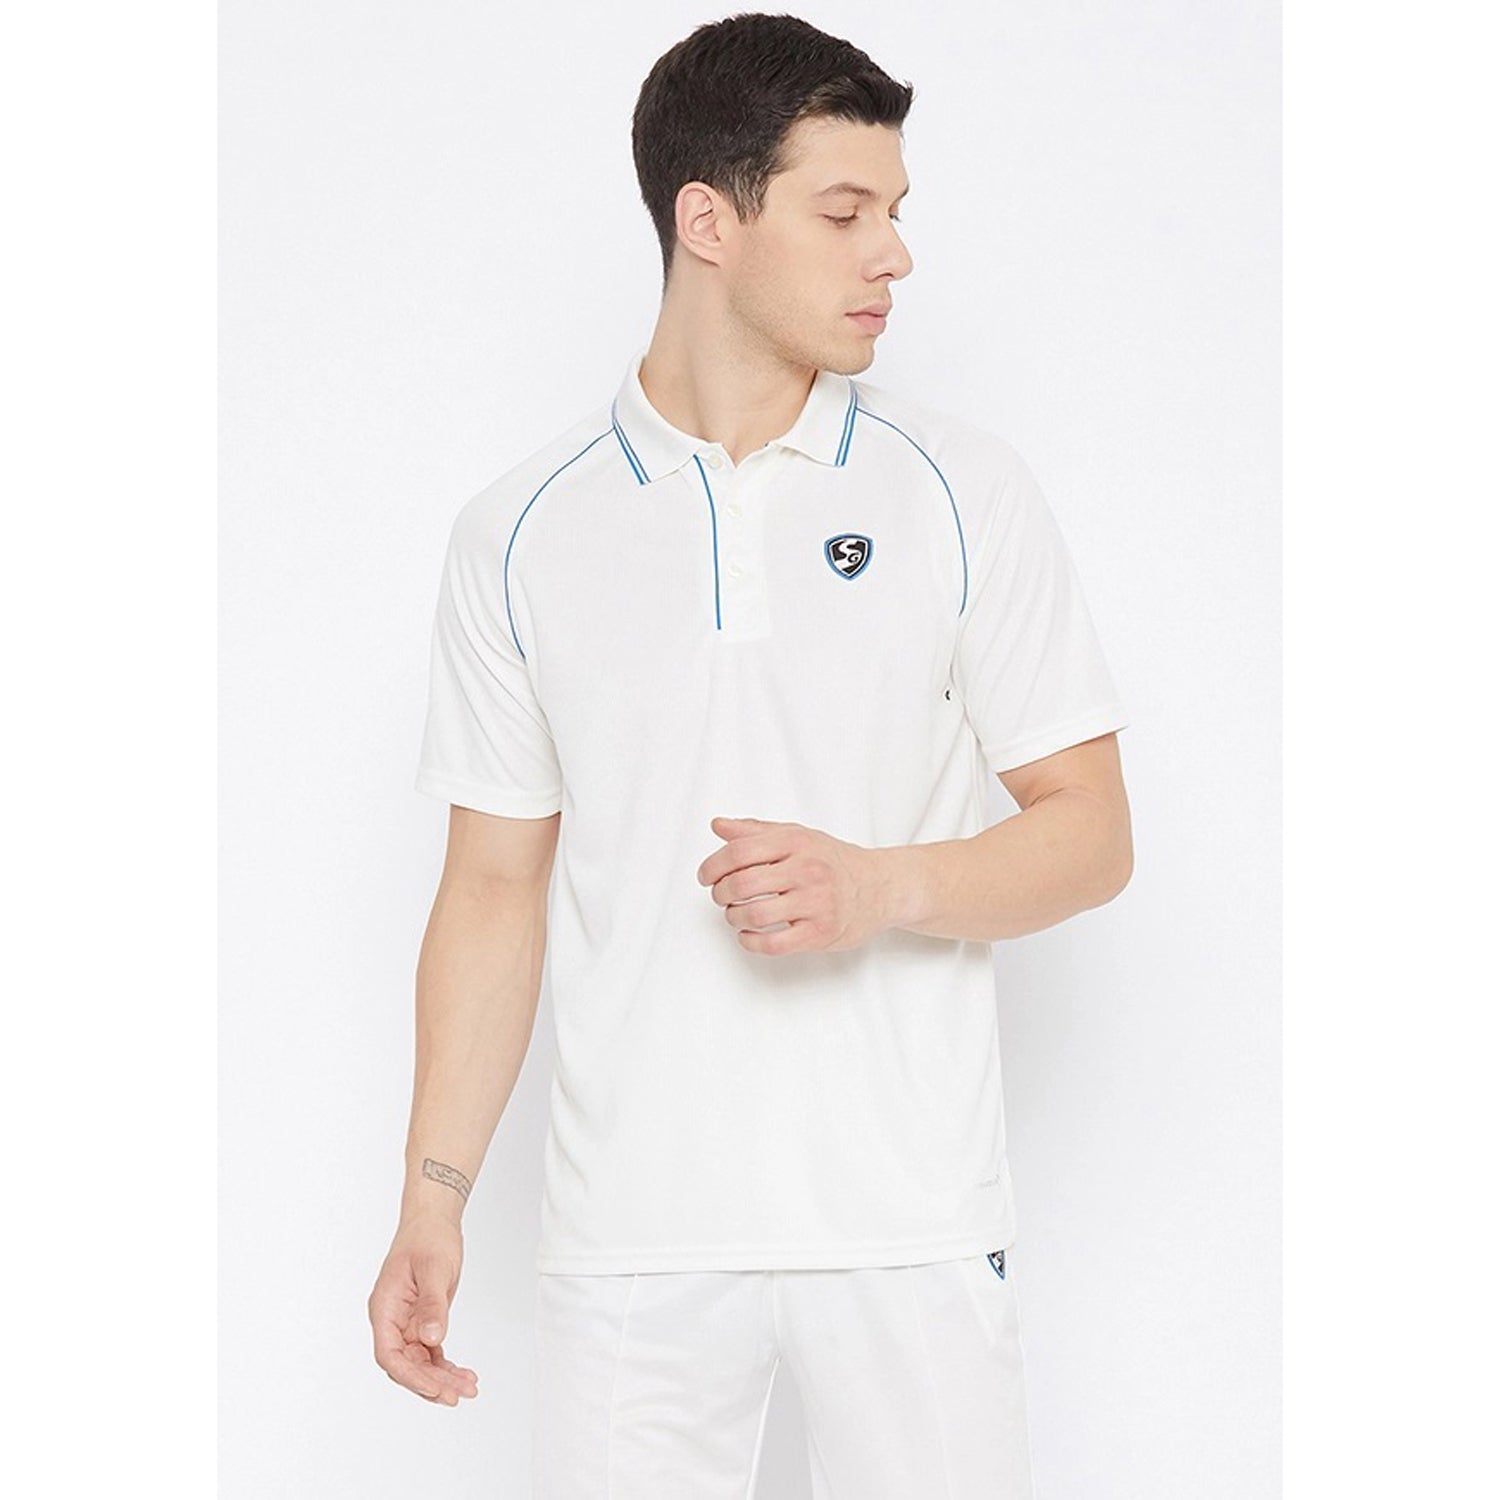 SG Legend Cricket Tshirt, Half Sleeves - Best Price online Prokicksports.com